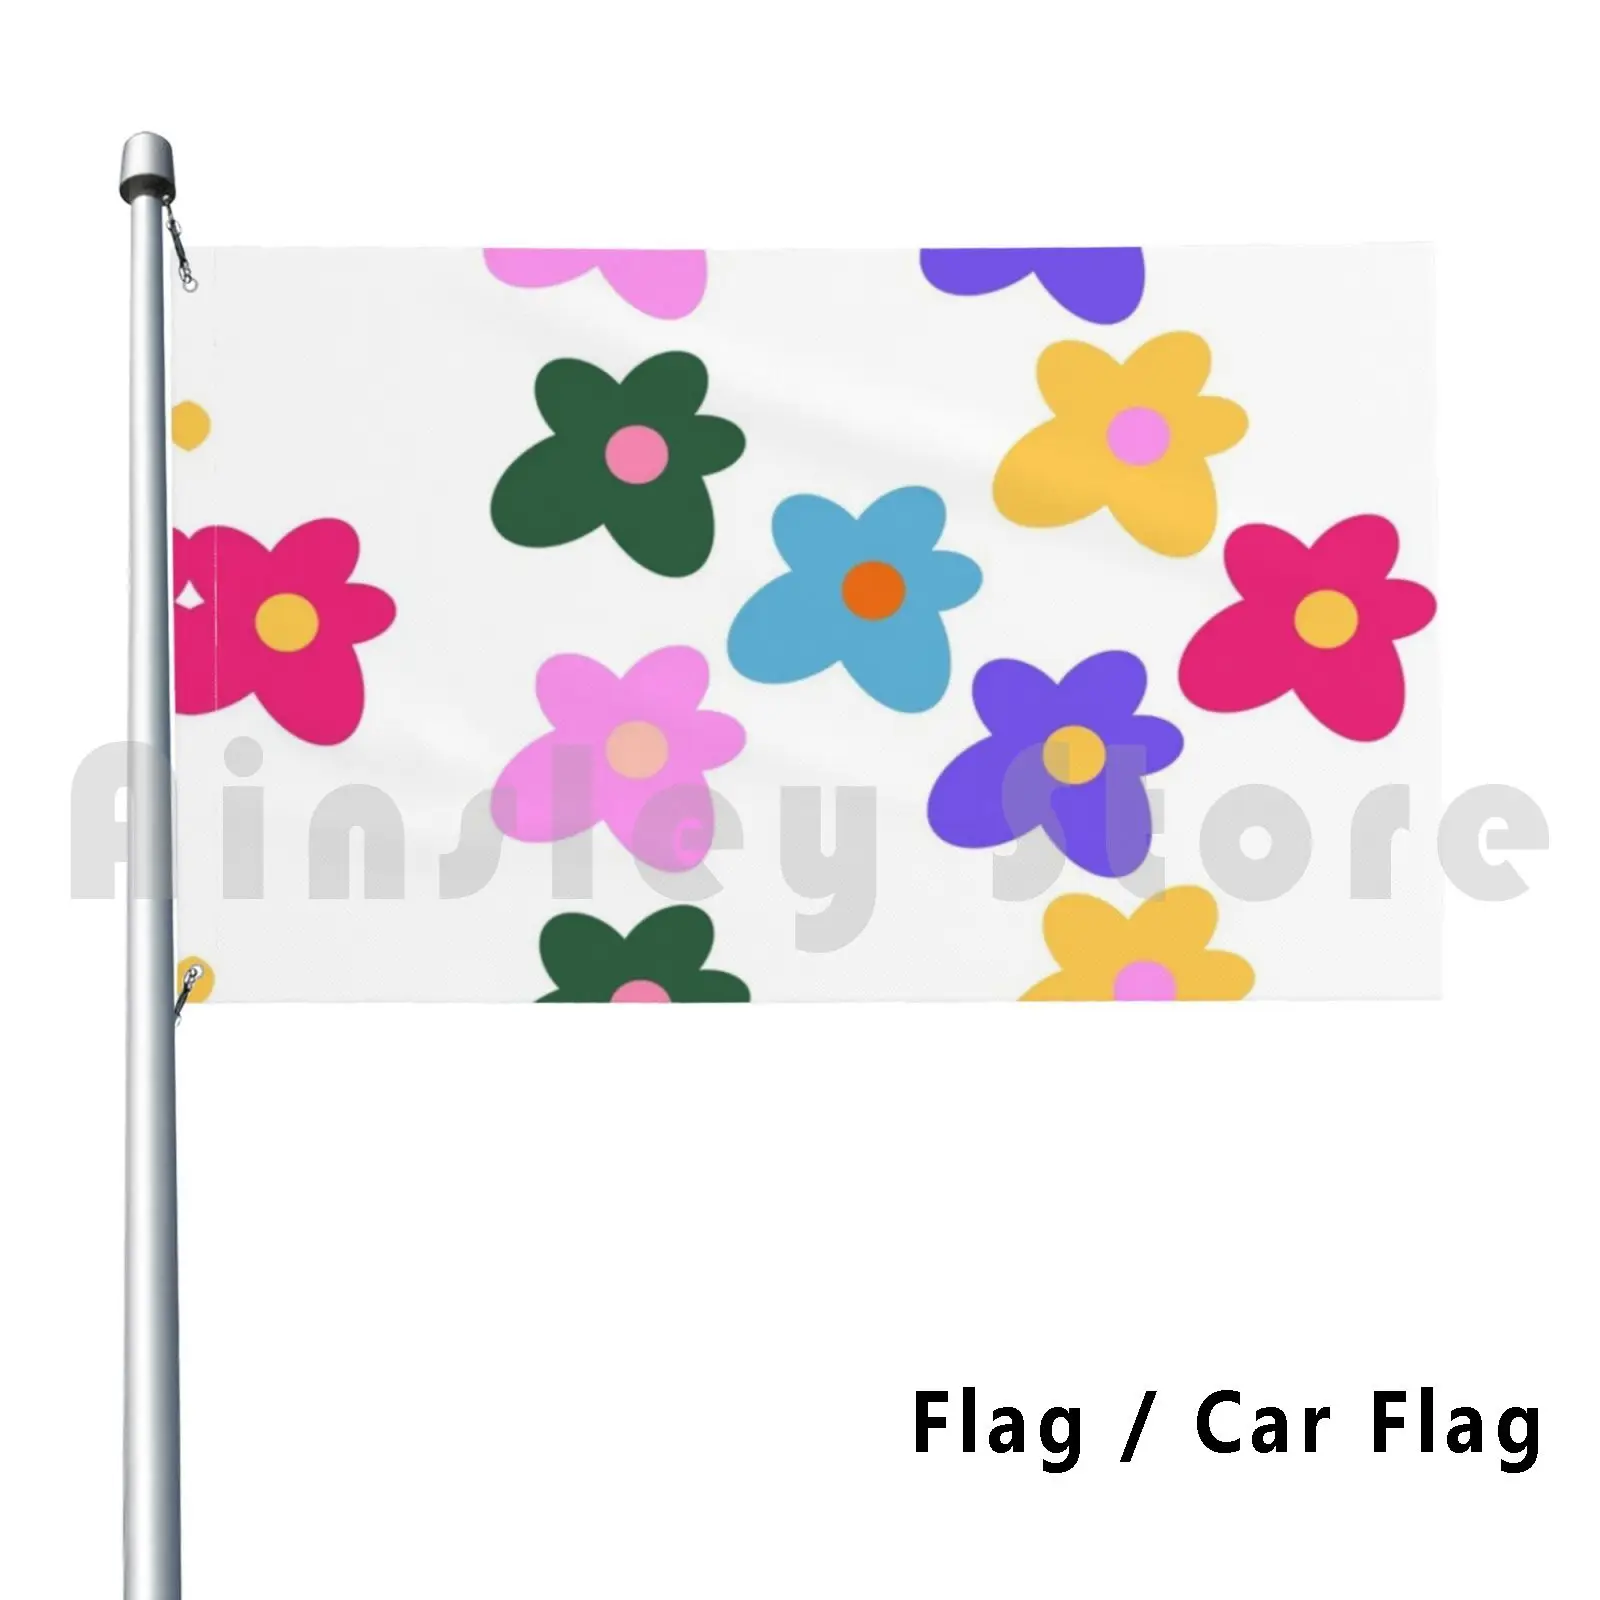 Golf Wang Tyler The Creator Flowers Flag Car Flag Funny Flower Golf Wang Flowers Tyler The Creator